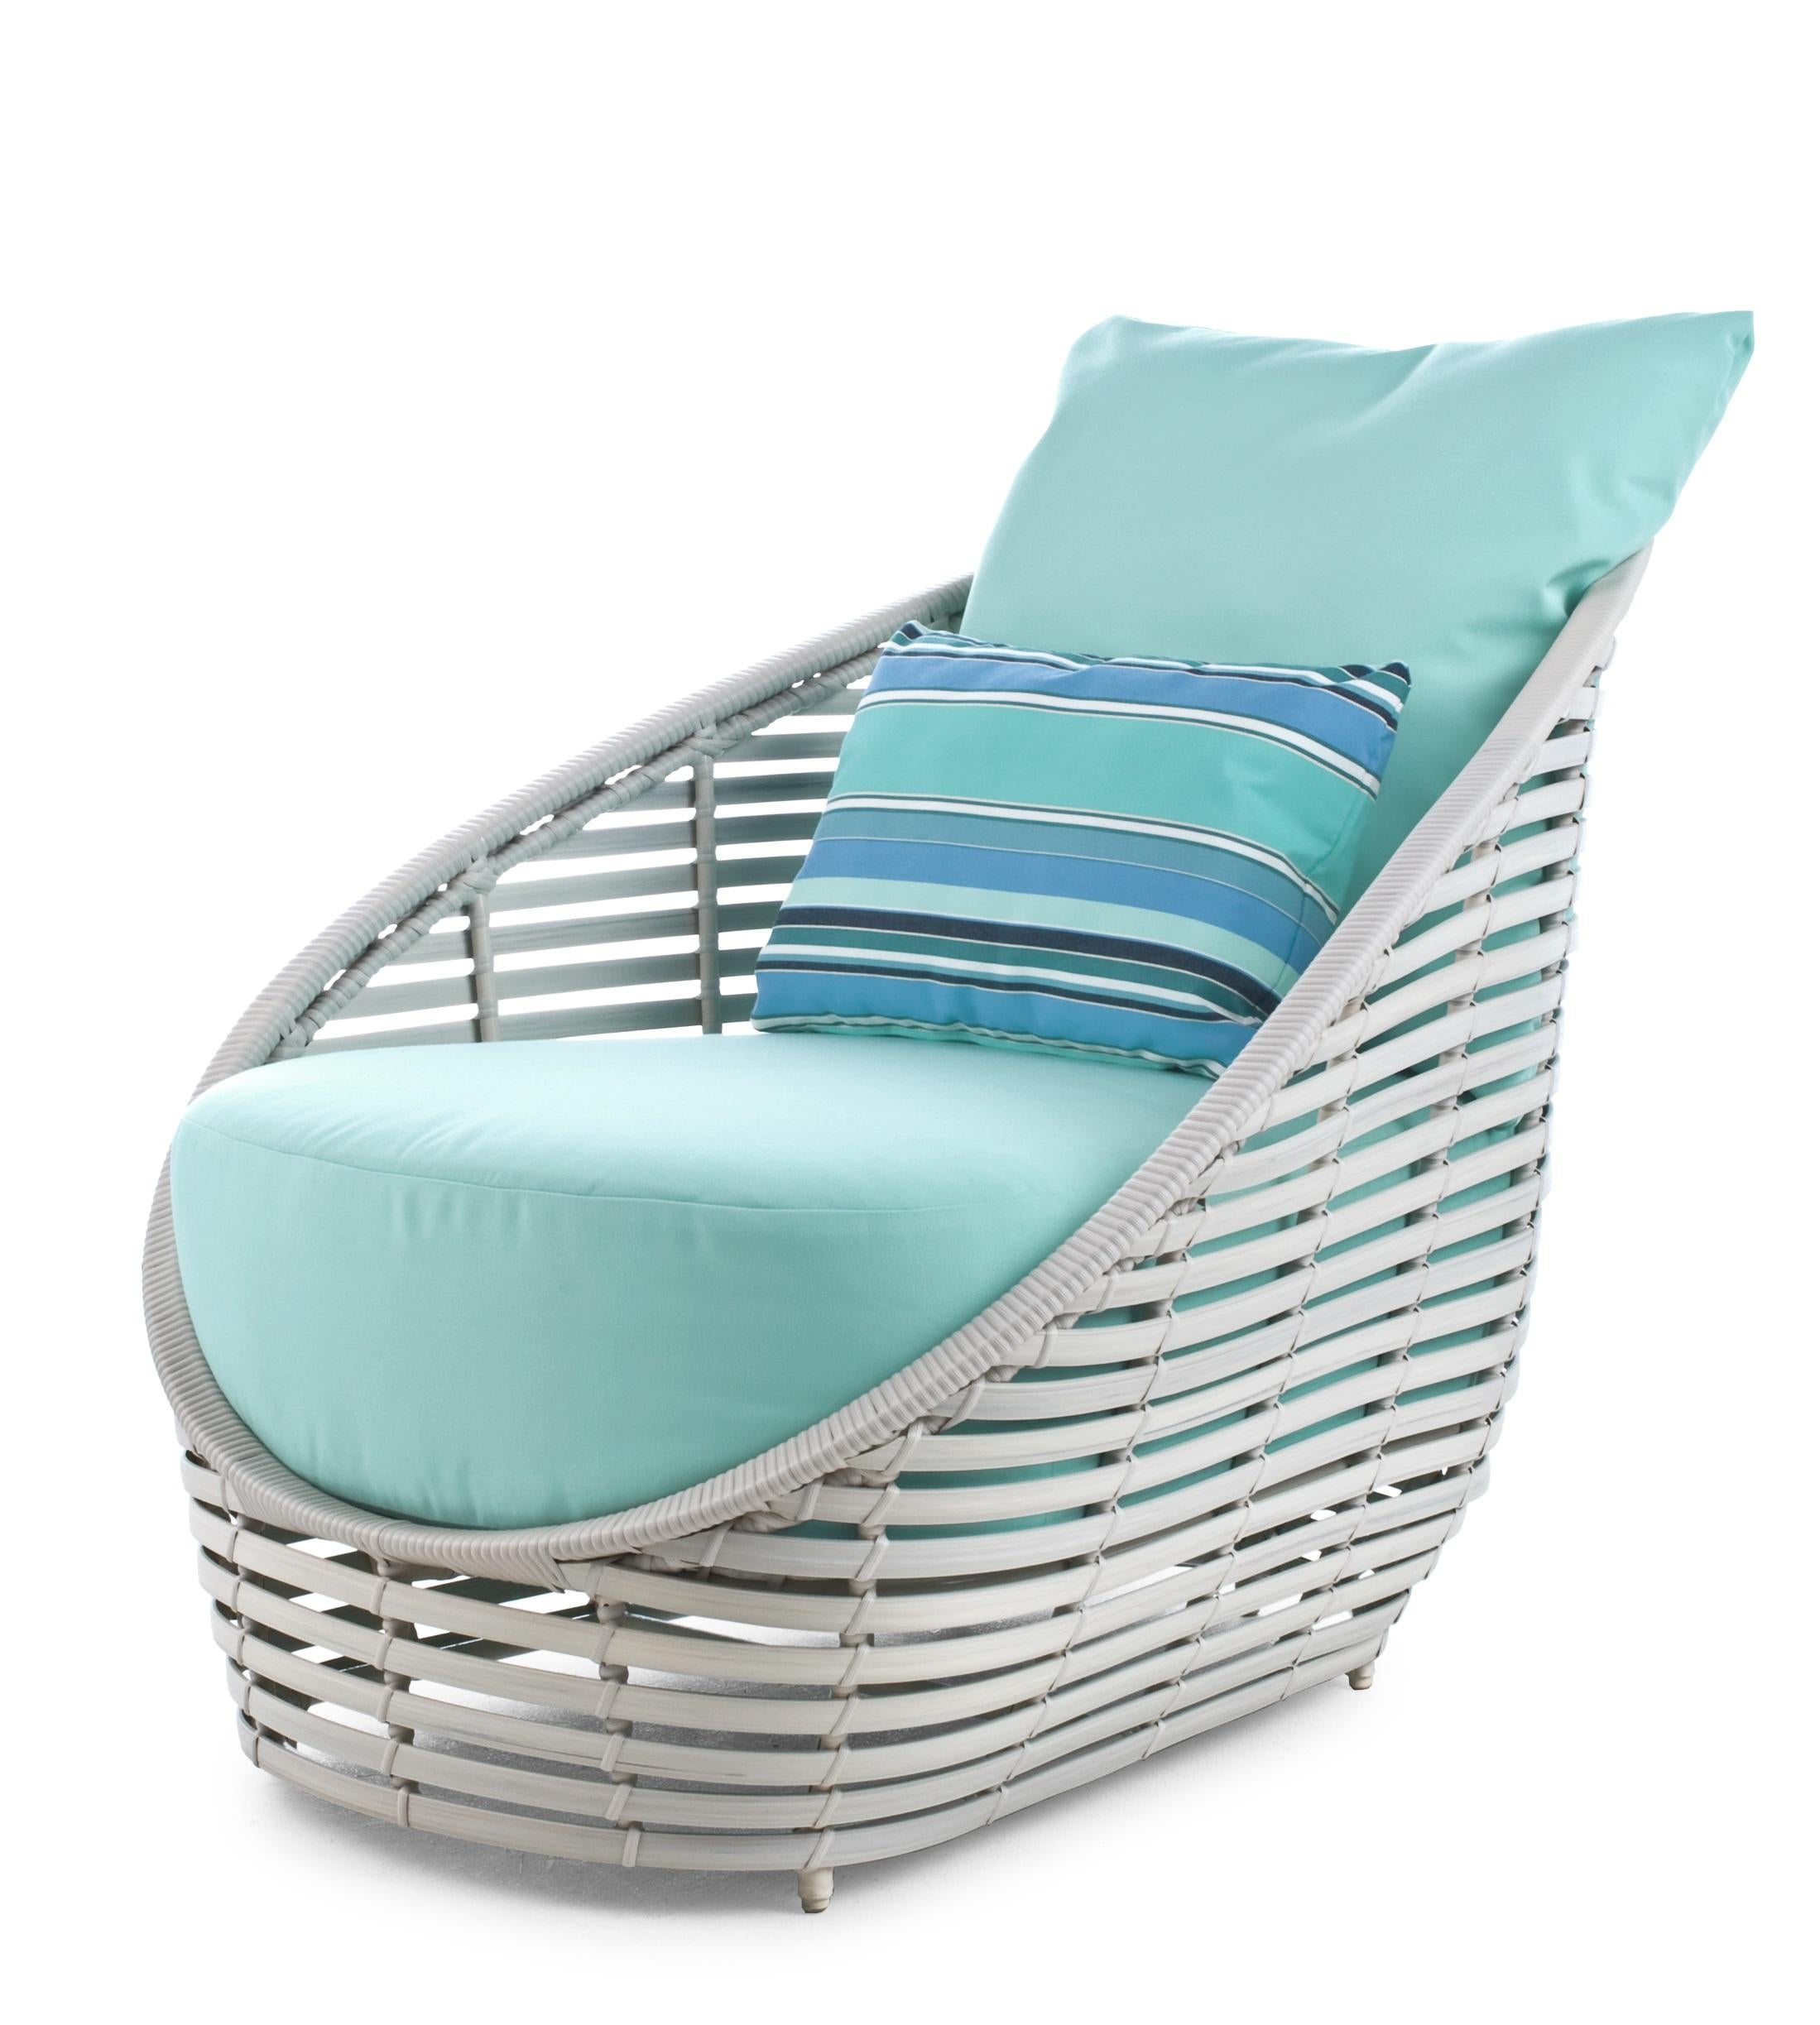 Oasis Sessel von Kenneth Cobonpue.
MATERIALEN: Polyethelene, Aluminium. 
Auch in anderen Farben erhältlich. 
Abmessungen: 106,5 cm x 79 cm x Höhe 76 cm

Inspiriert von der zarten Form der Tulpe, bietet Oasis einen beruhigenden Komfort. Diese